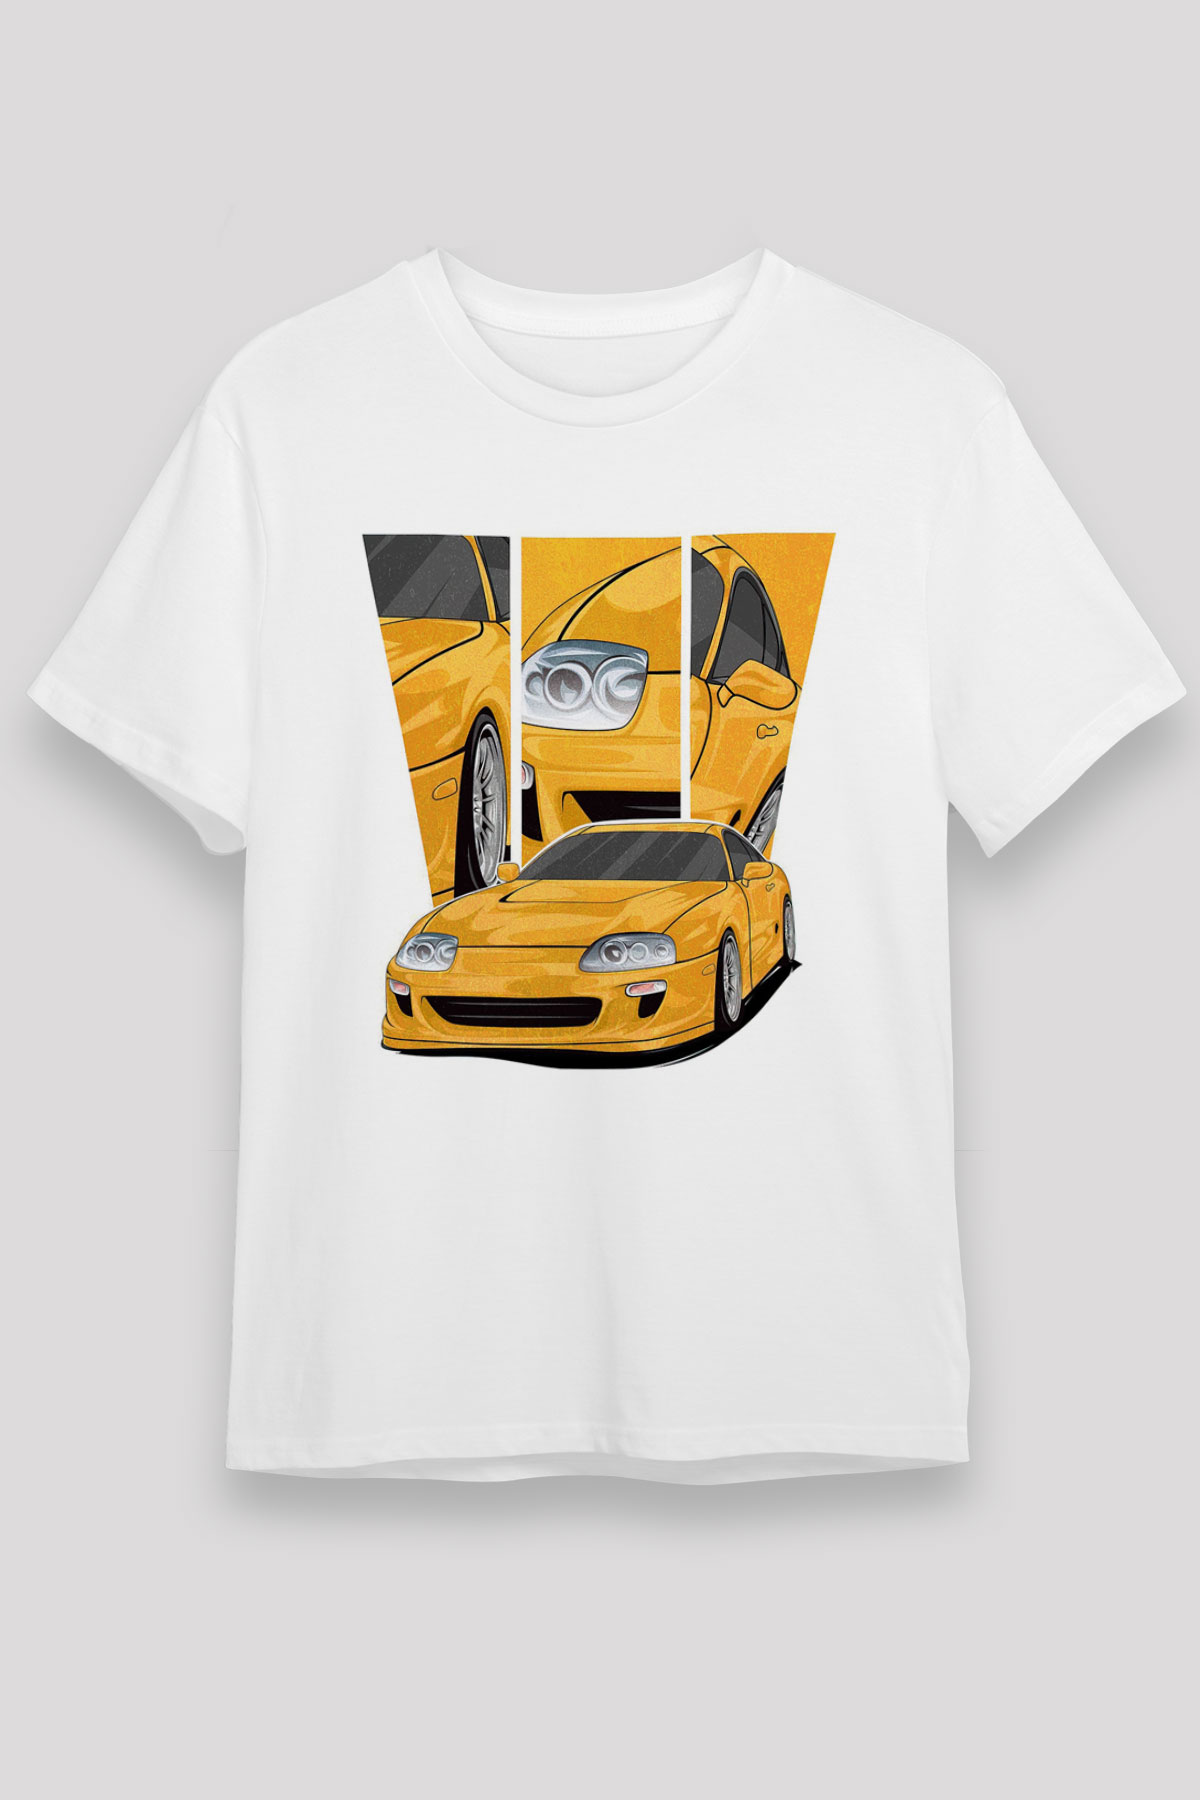 Toyota-supra Cars,Racing,Unisex,Tshirt 02